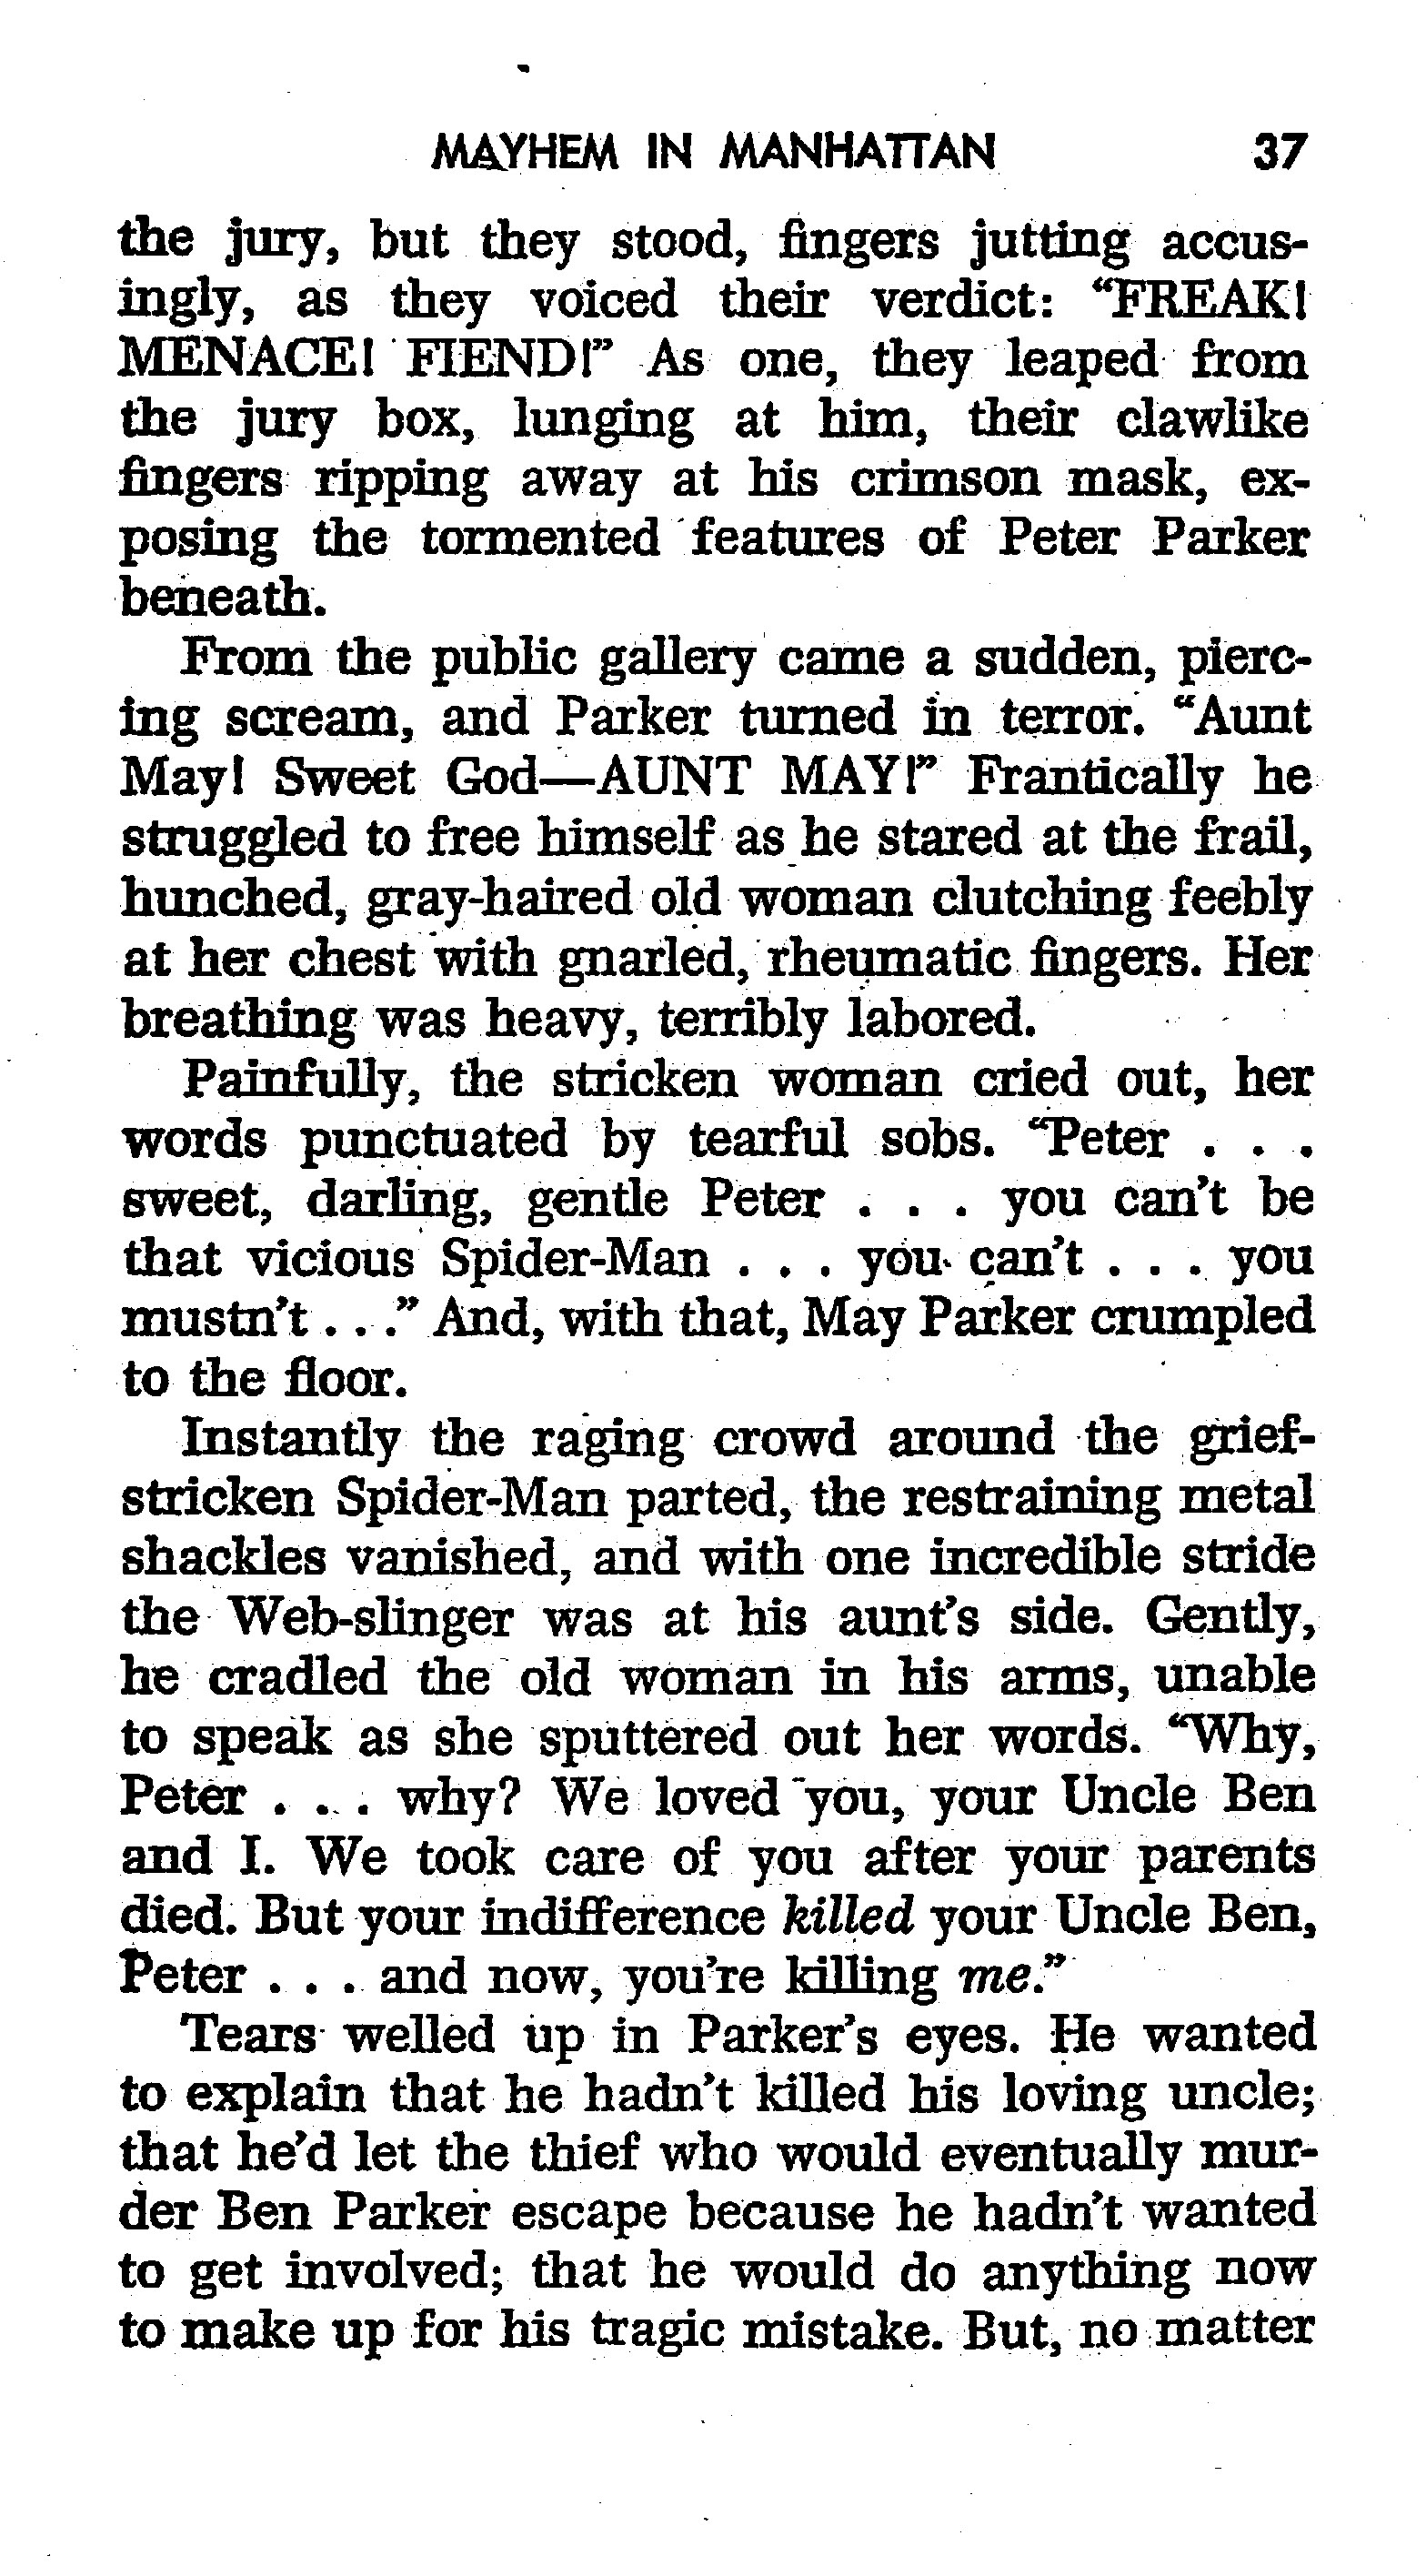 Read online The Amazing Spider-Man: Mayhem in Manhattan comic -  Issue # TPB (Part 1) - 38